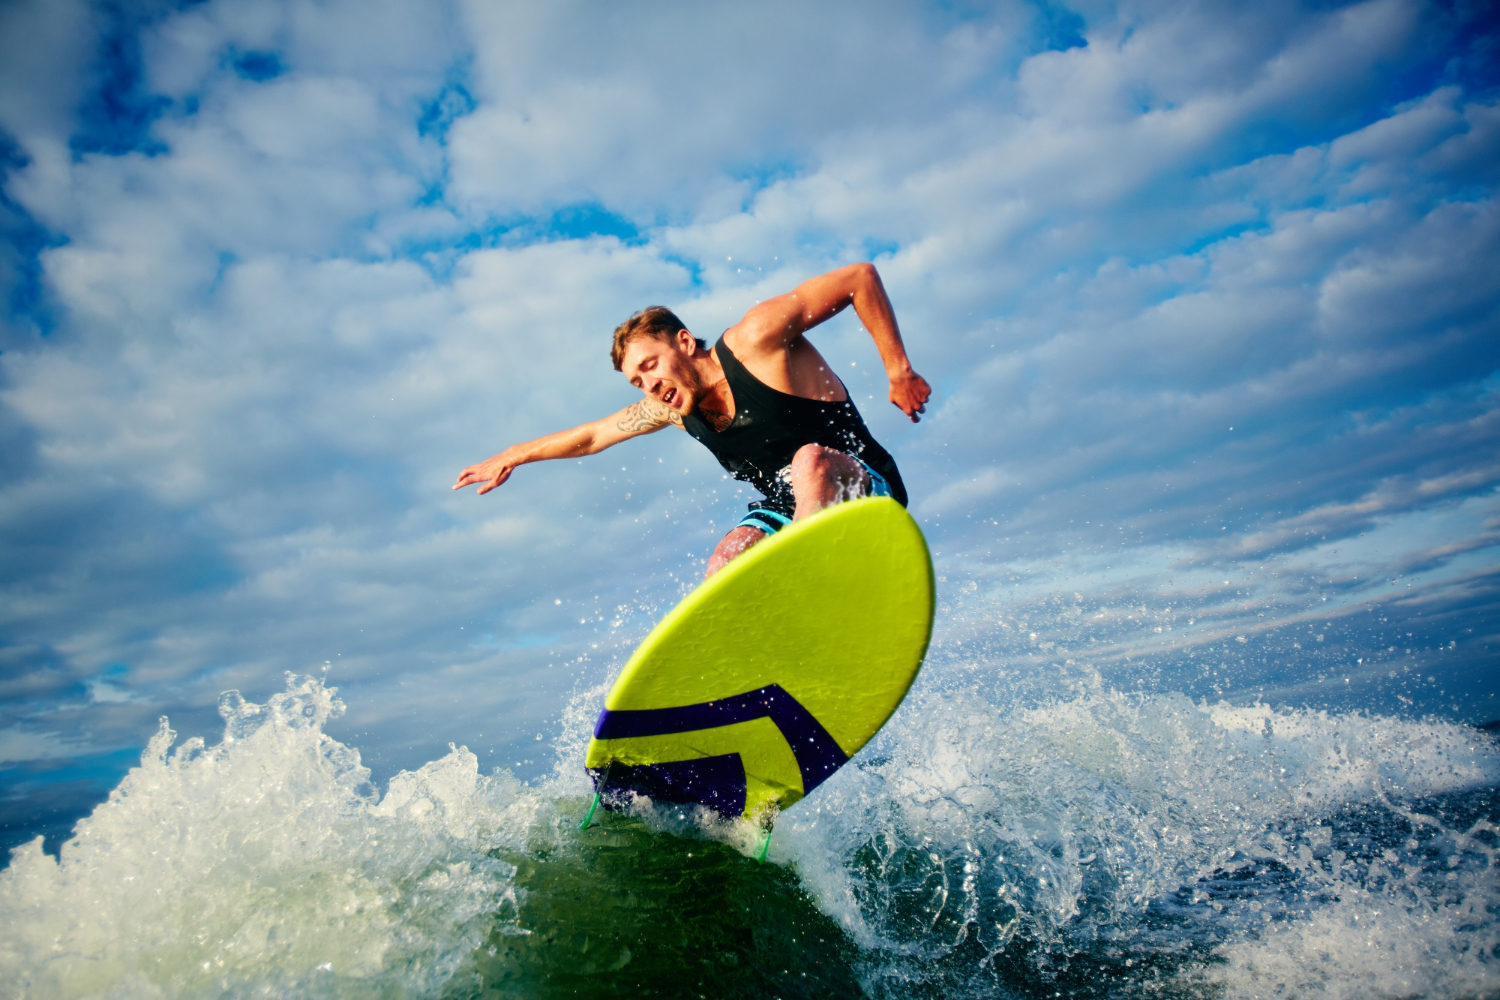 Surfing at ocean